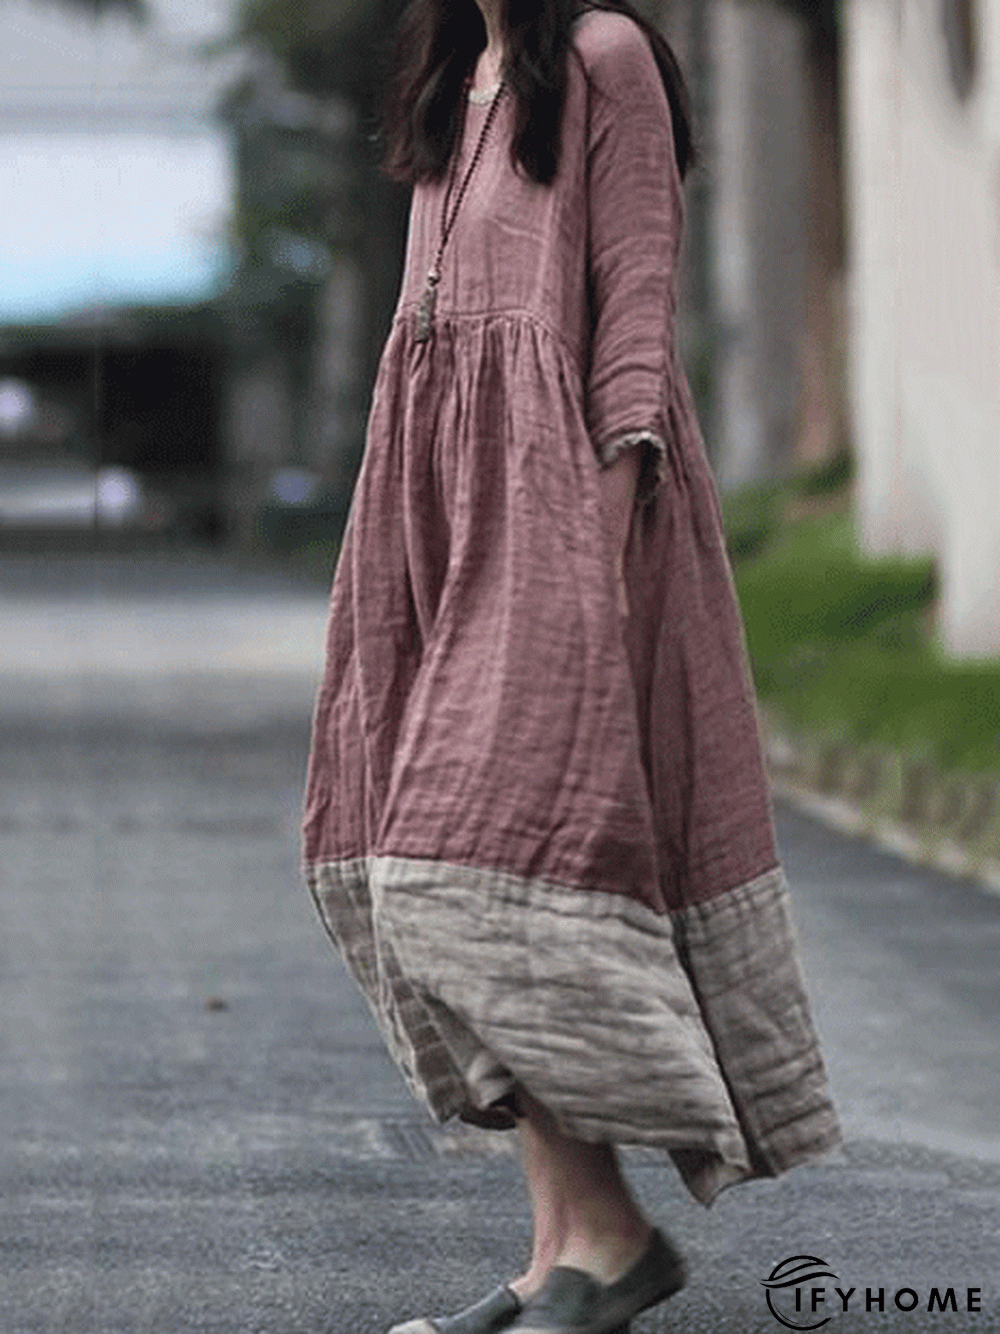 zolucky Women Causal Dress Crew Neck Long Sleeve Maxi Knitting Dress | IFYHOME